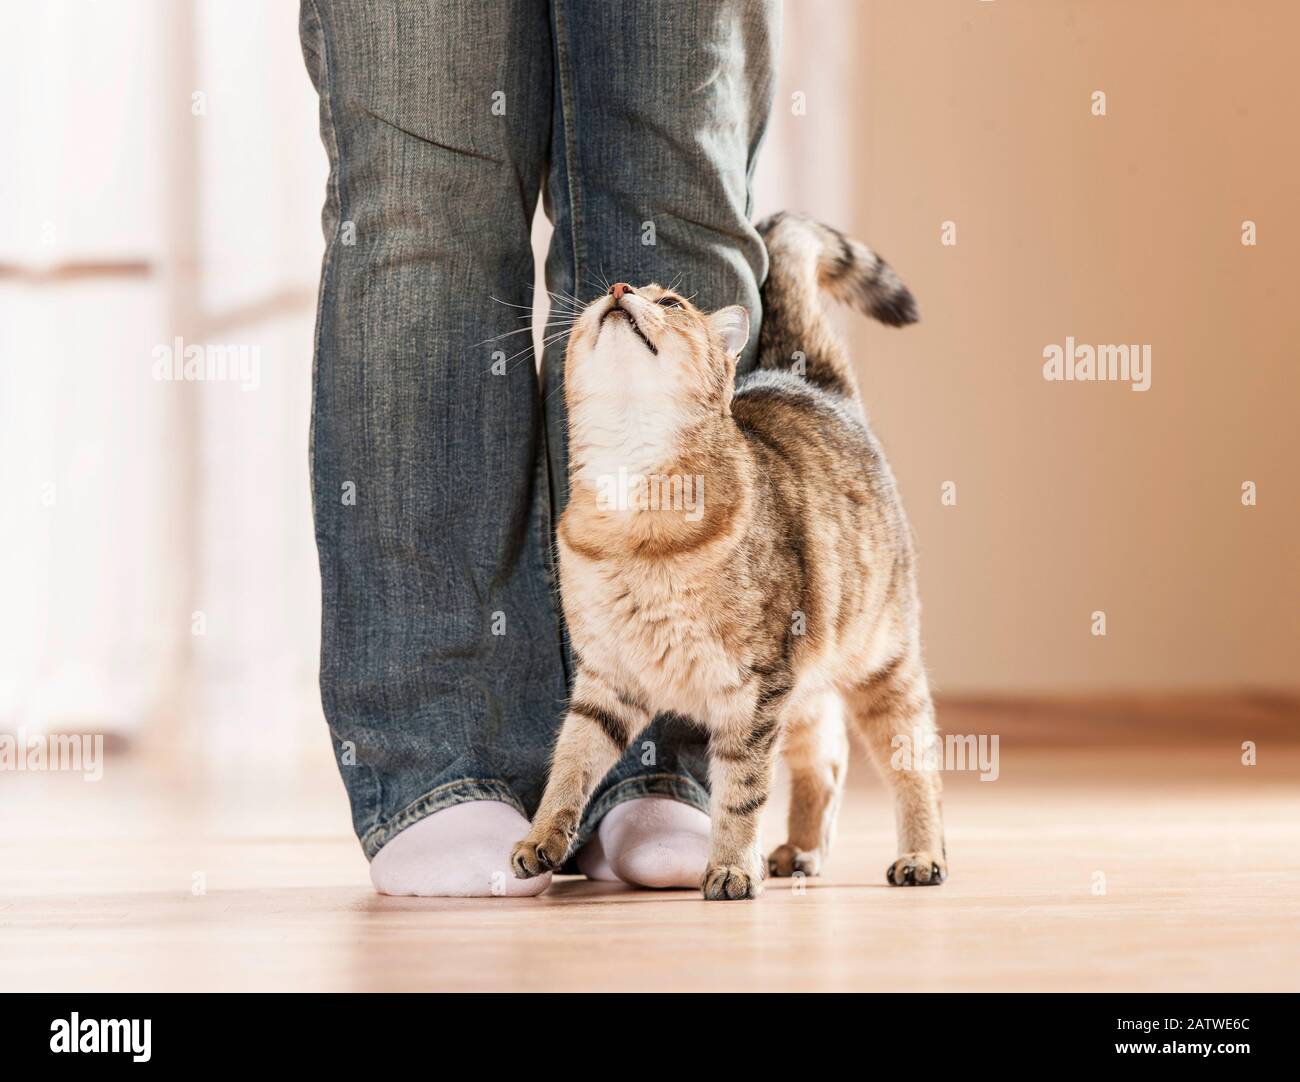 Chat domestique. Chat adulte démontrant son affection pour une personne en frottant son front contre ses jambes. Allemagne Banque D'Images